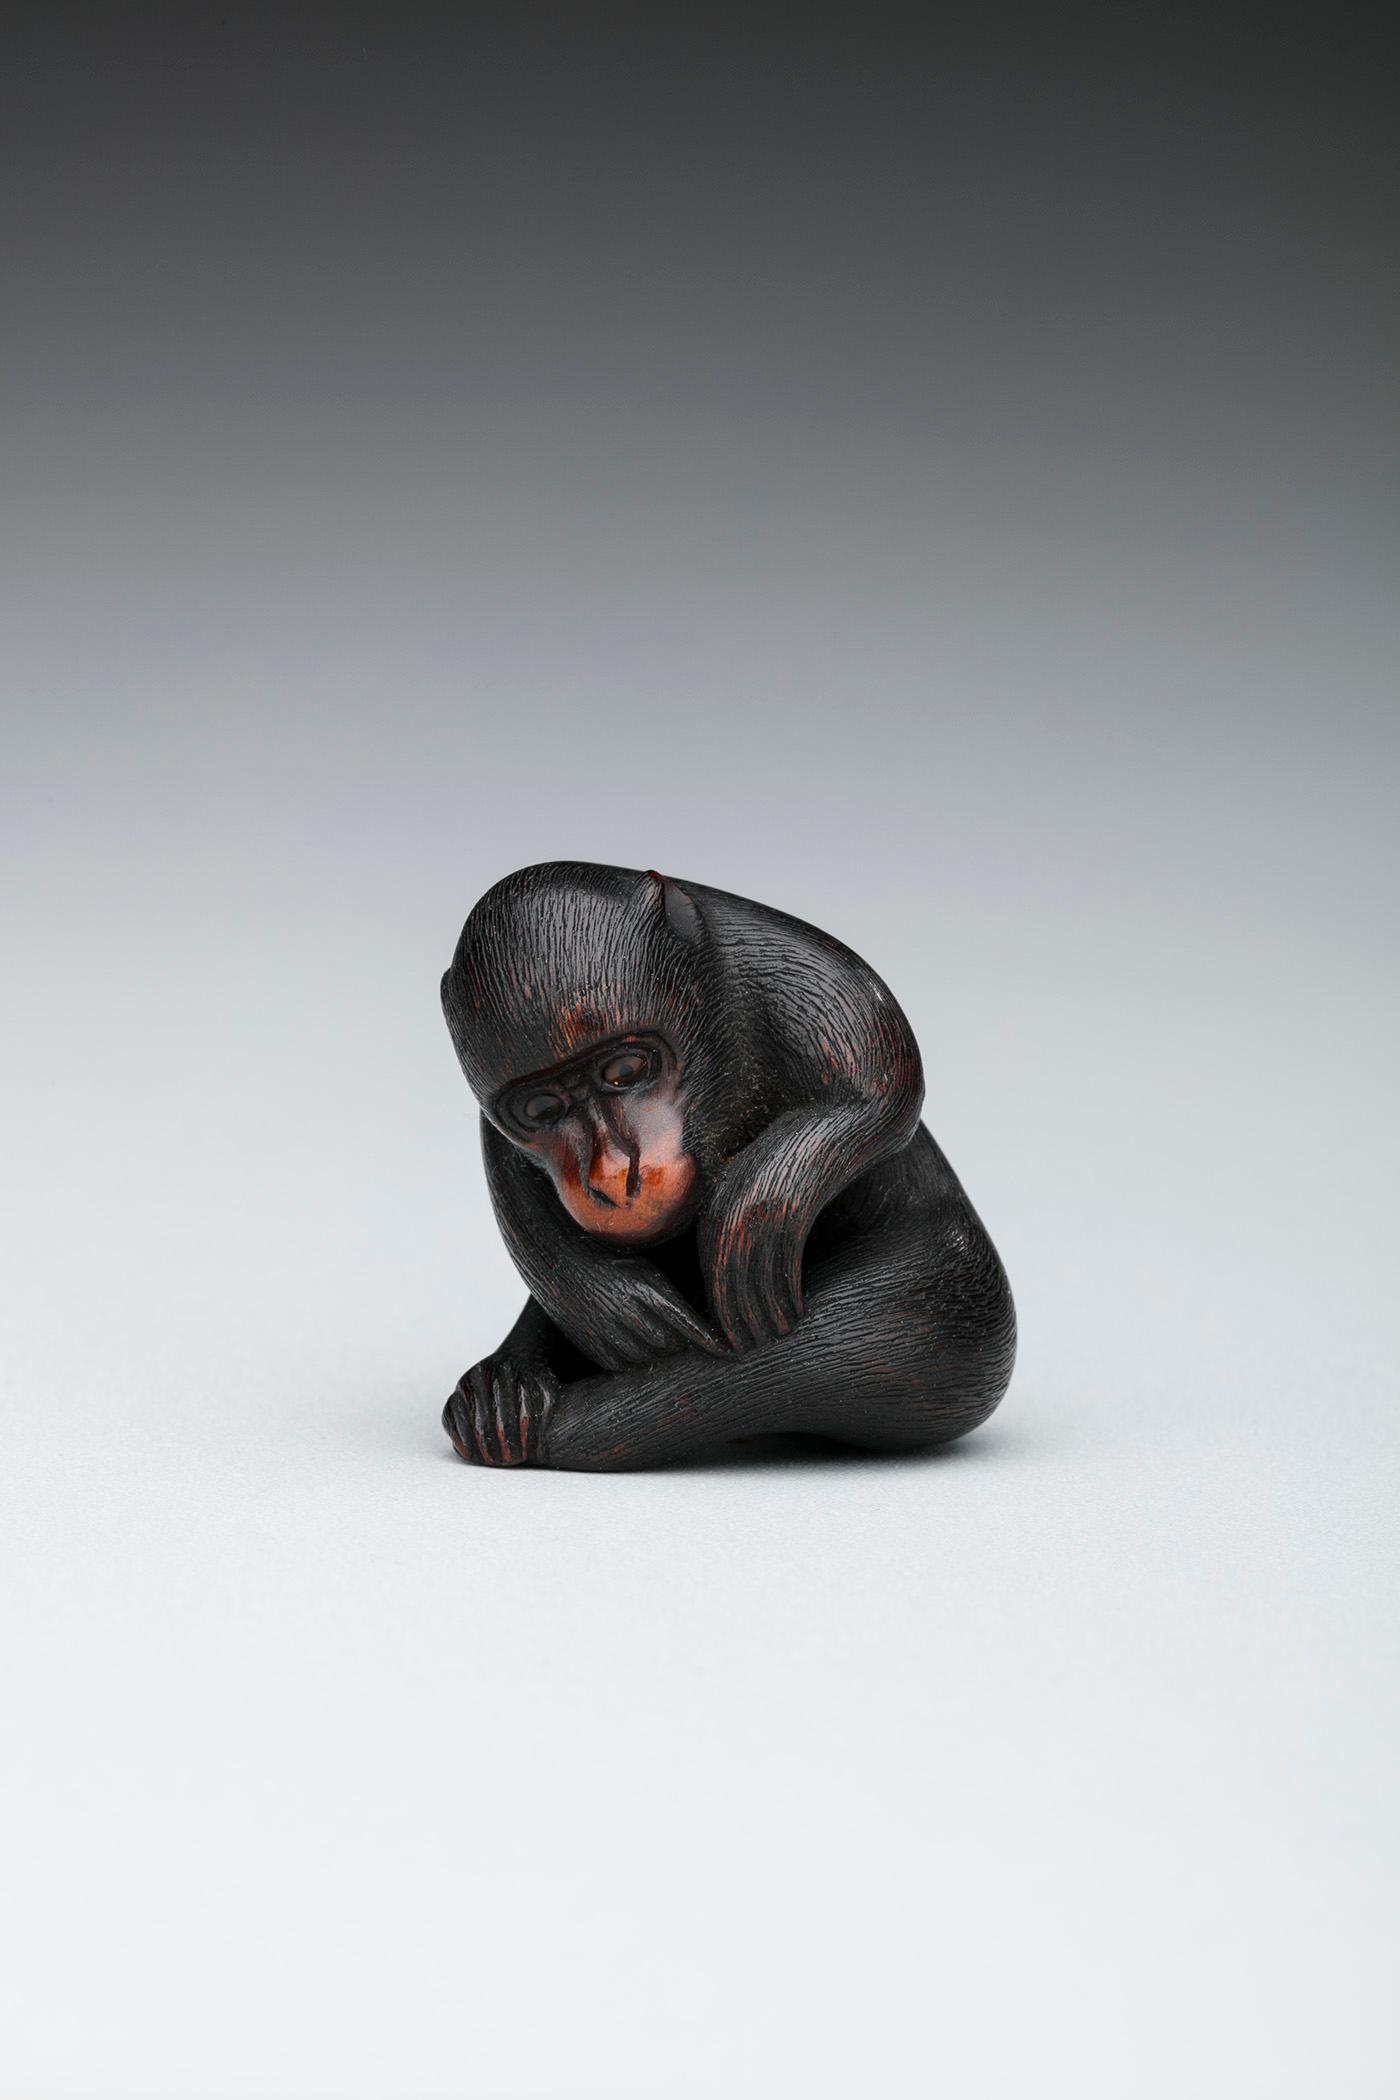 Netsuke: Mono sentado quitándose una pulga by Artista anónimo  - Siglo XIX Museo de Arte de Toledo